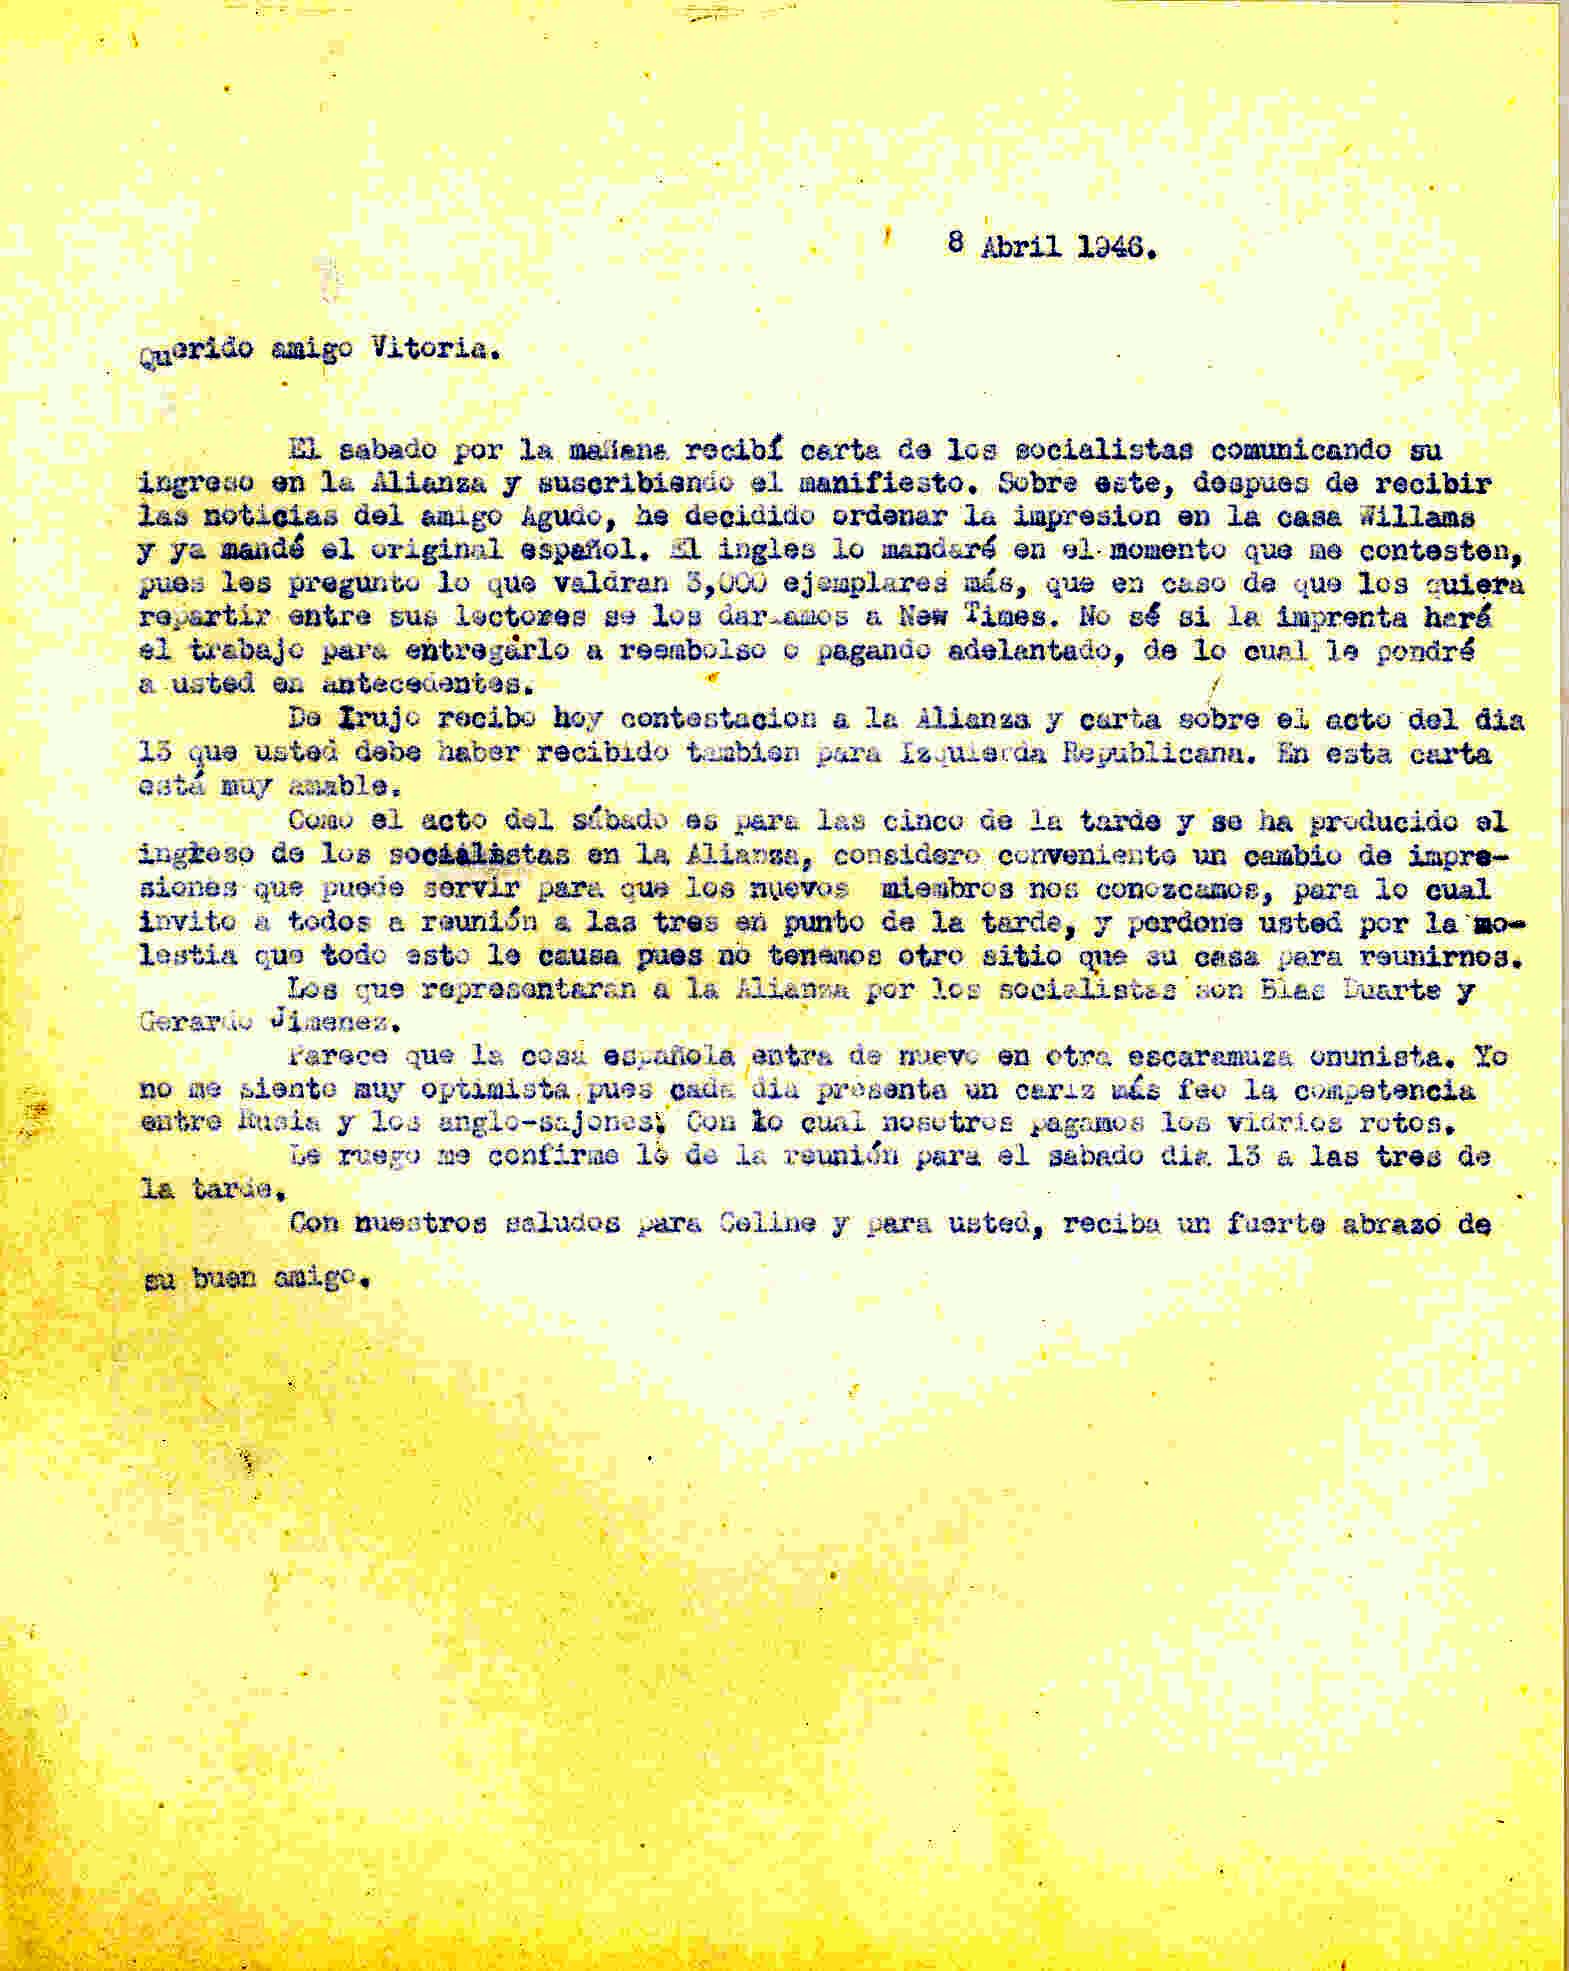 Carta a Roque Victoria en la que comunica que recibió carta de los socialistas por su ingreso en la Alianza y que ha ordenado la impresión del manifiesto.